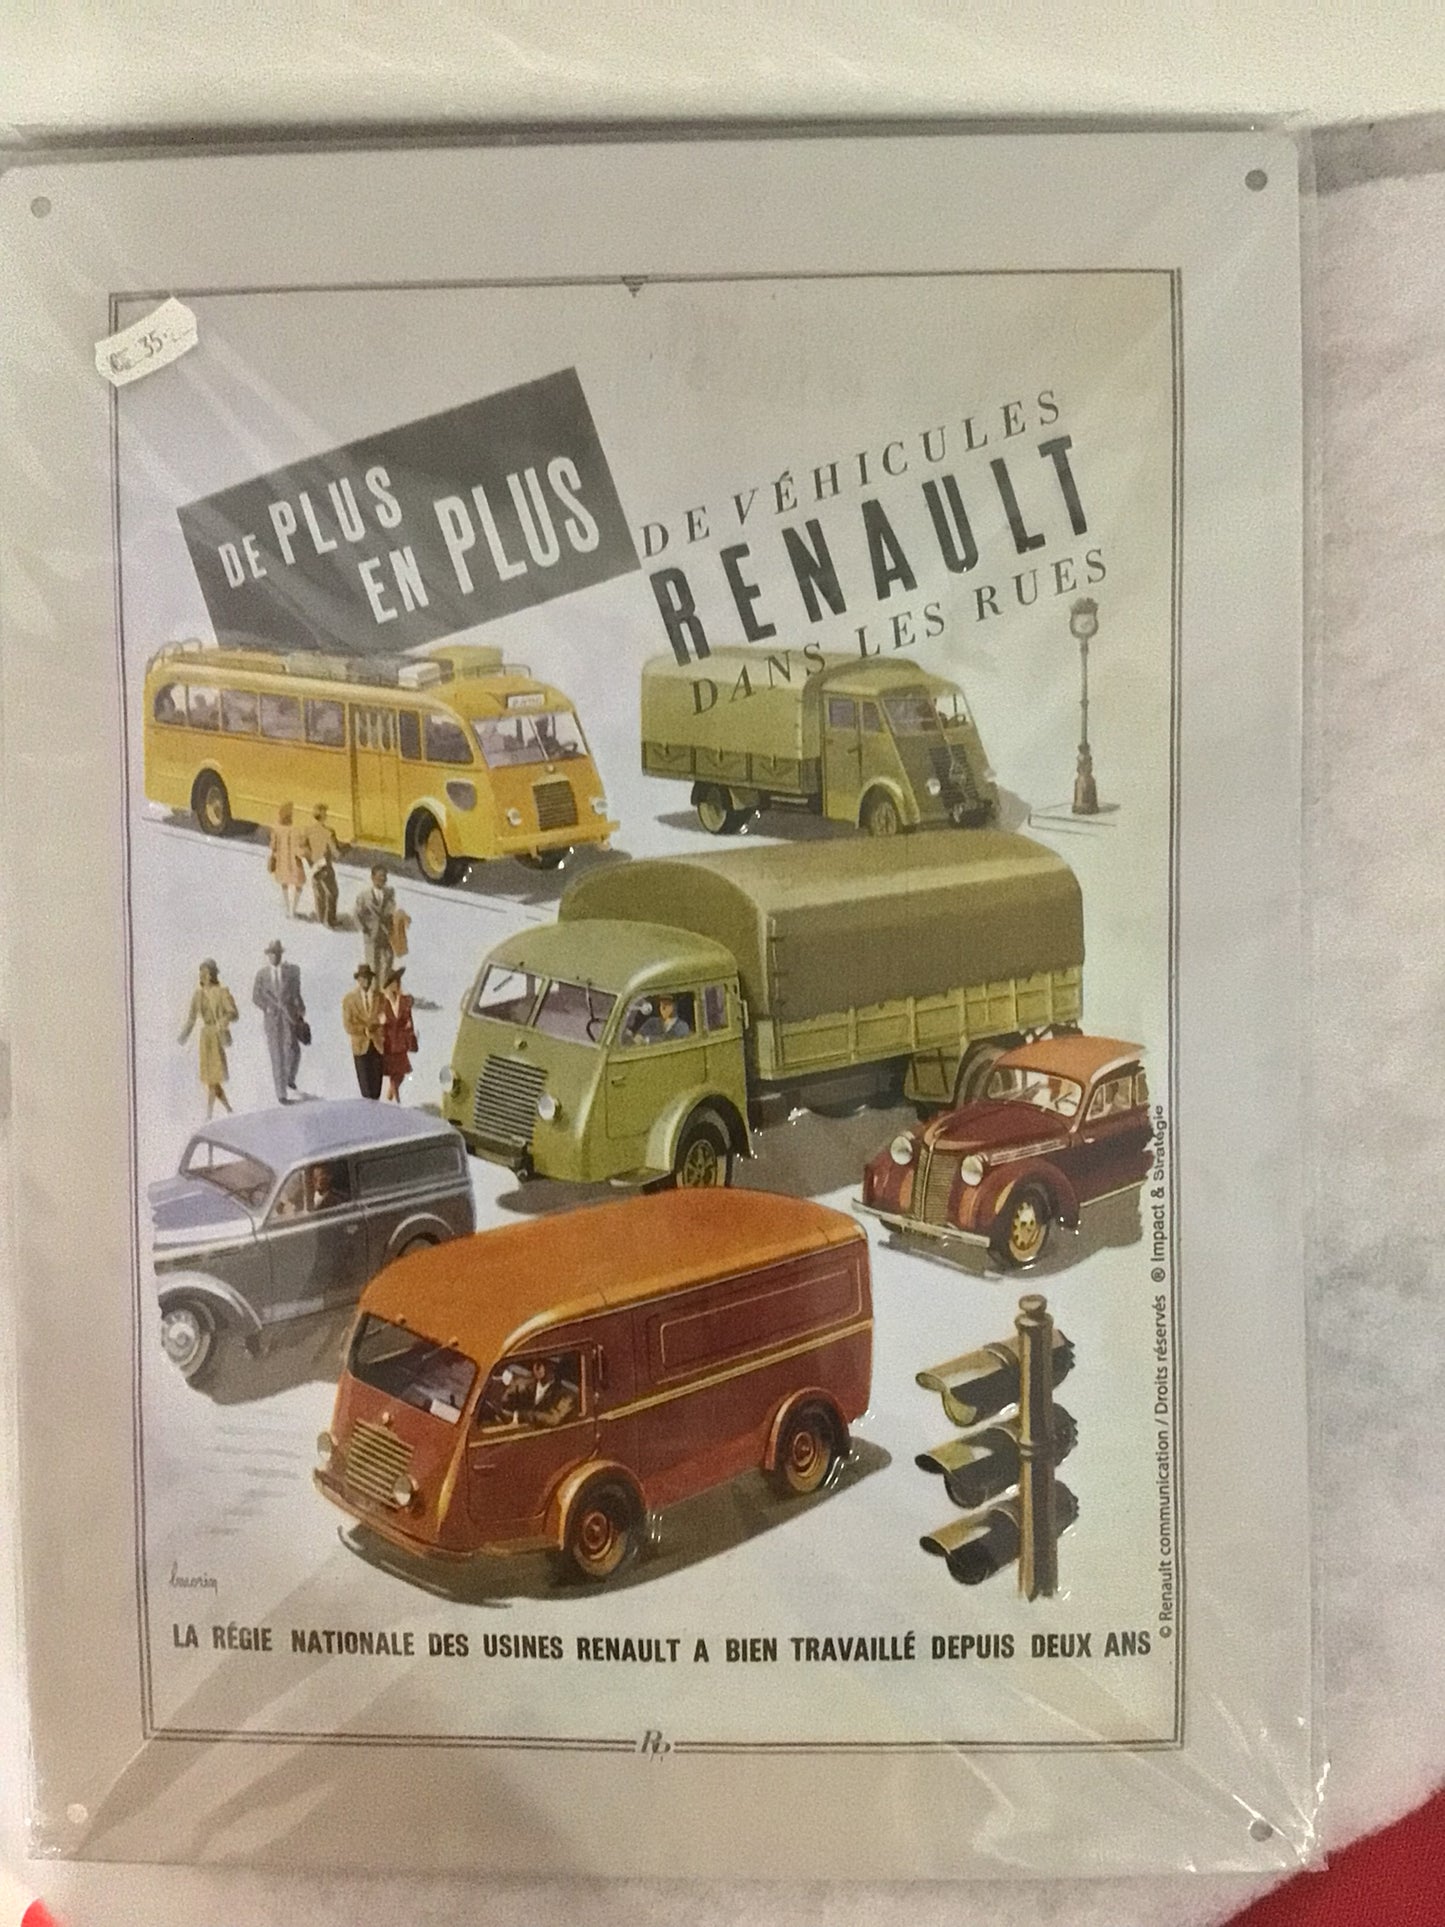 Renault-Schilder mit Reliefs